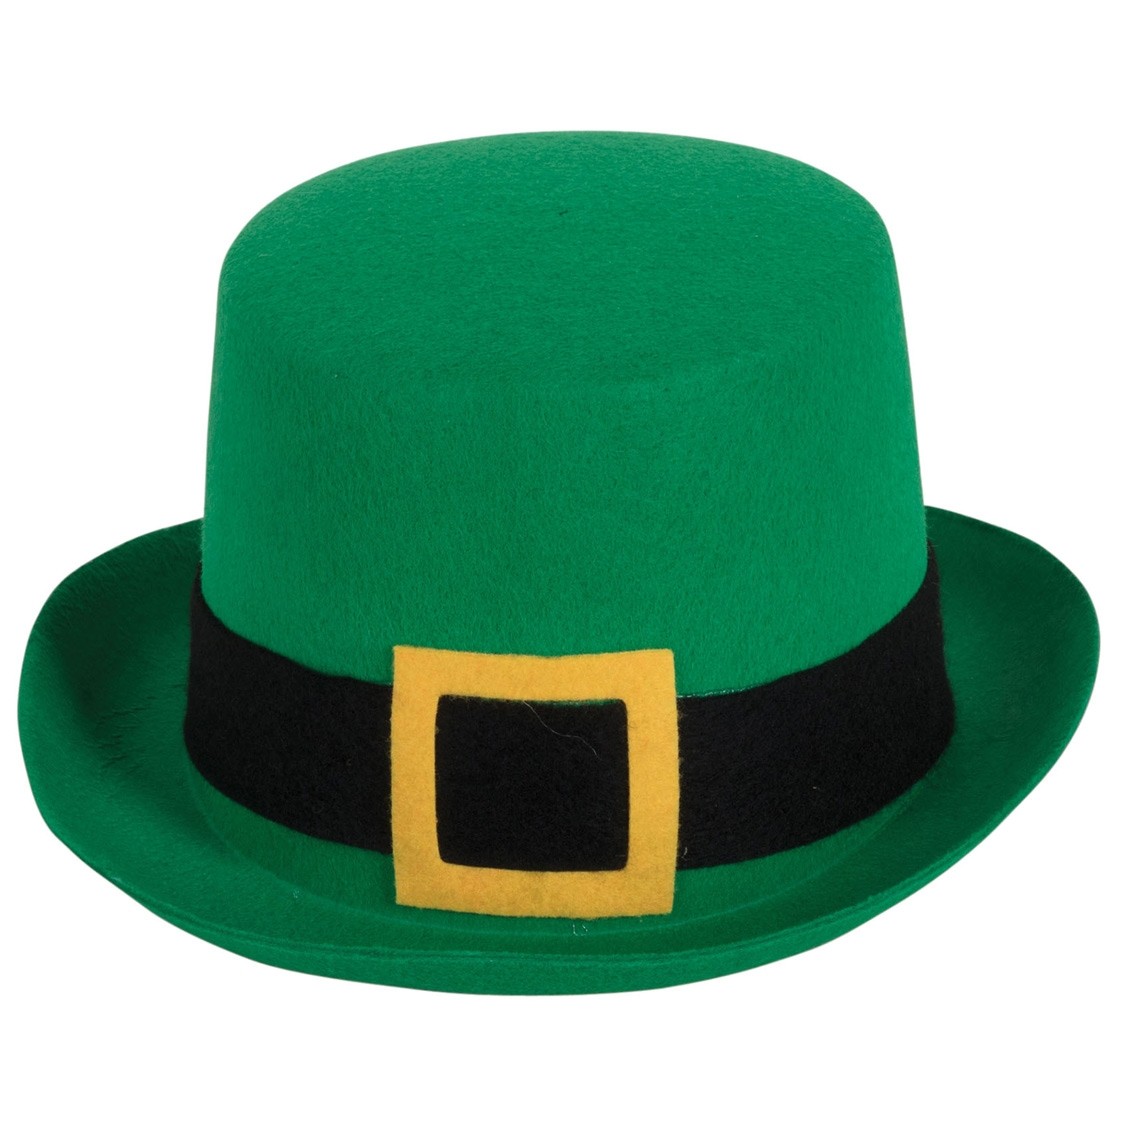 Amosfun St Patricks Day Zylinder Hut Faschingshut Irische Party Kopfbedeckung Kostüm Dekoration